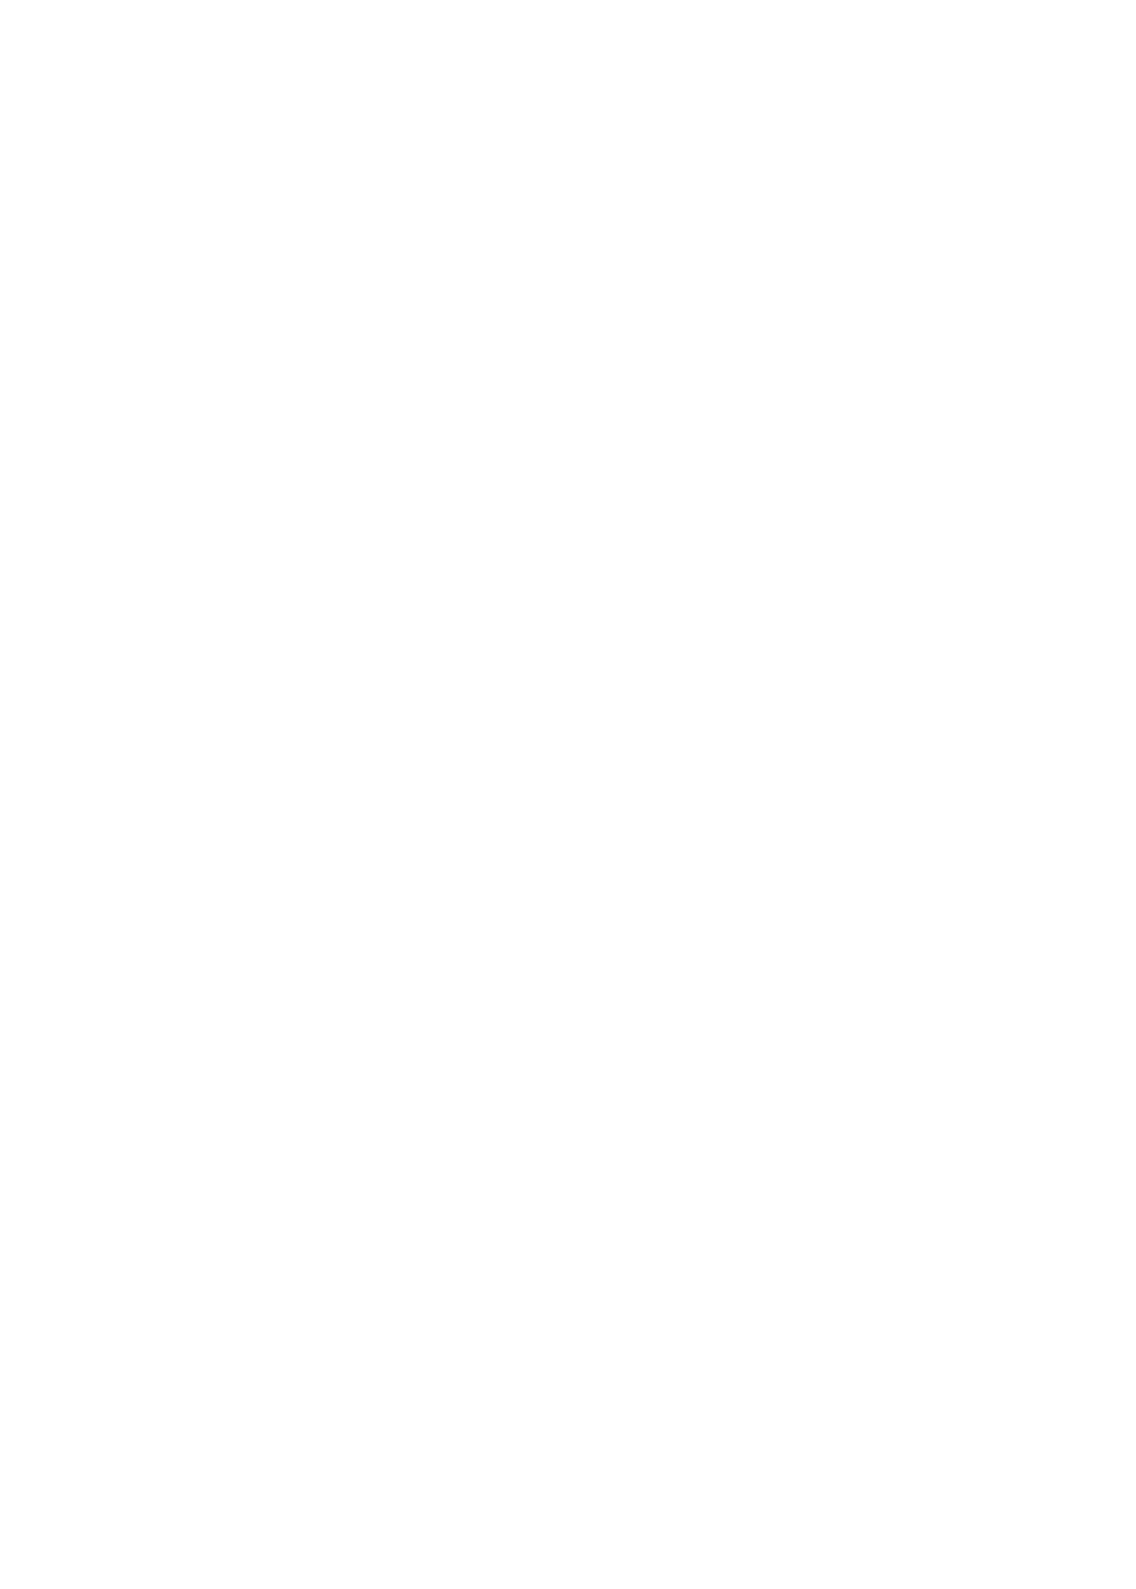 Wildcat Haven